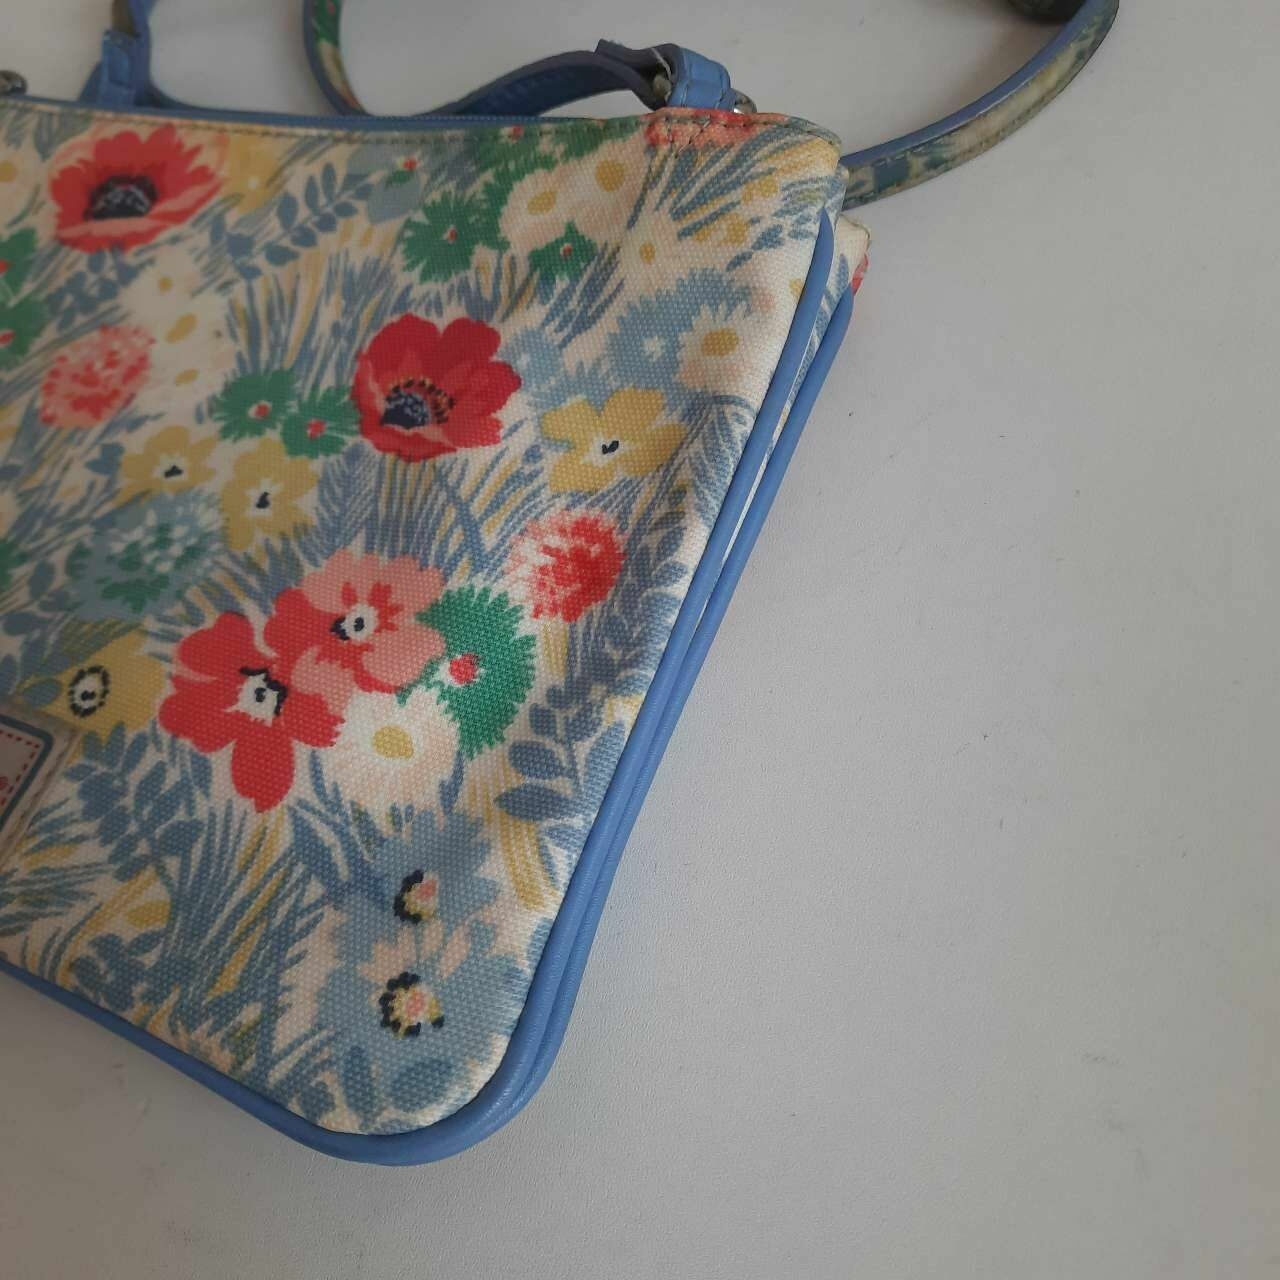 Cath Kidston Blue Floral Sling Bag